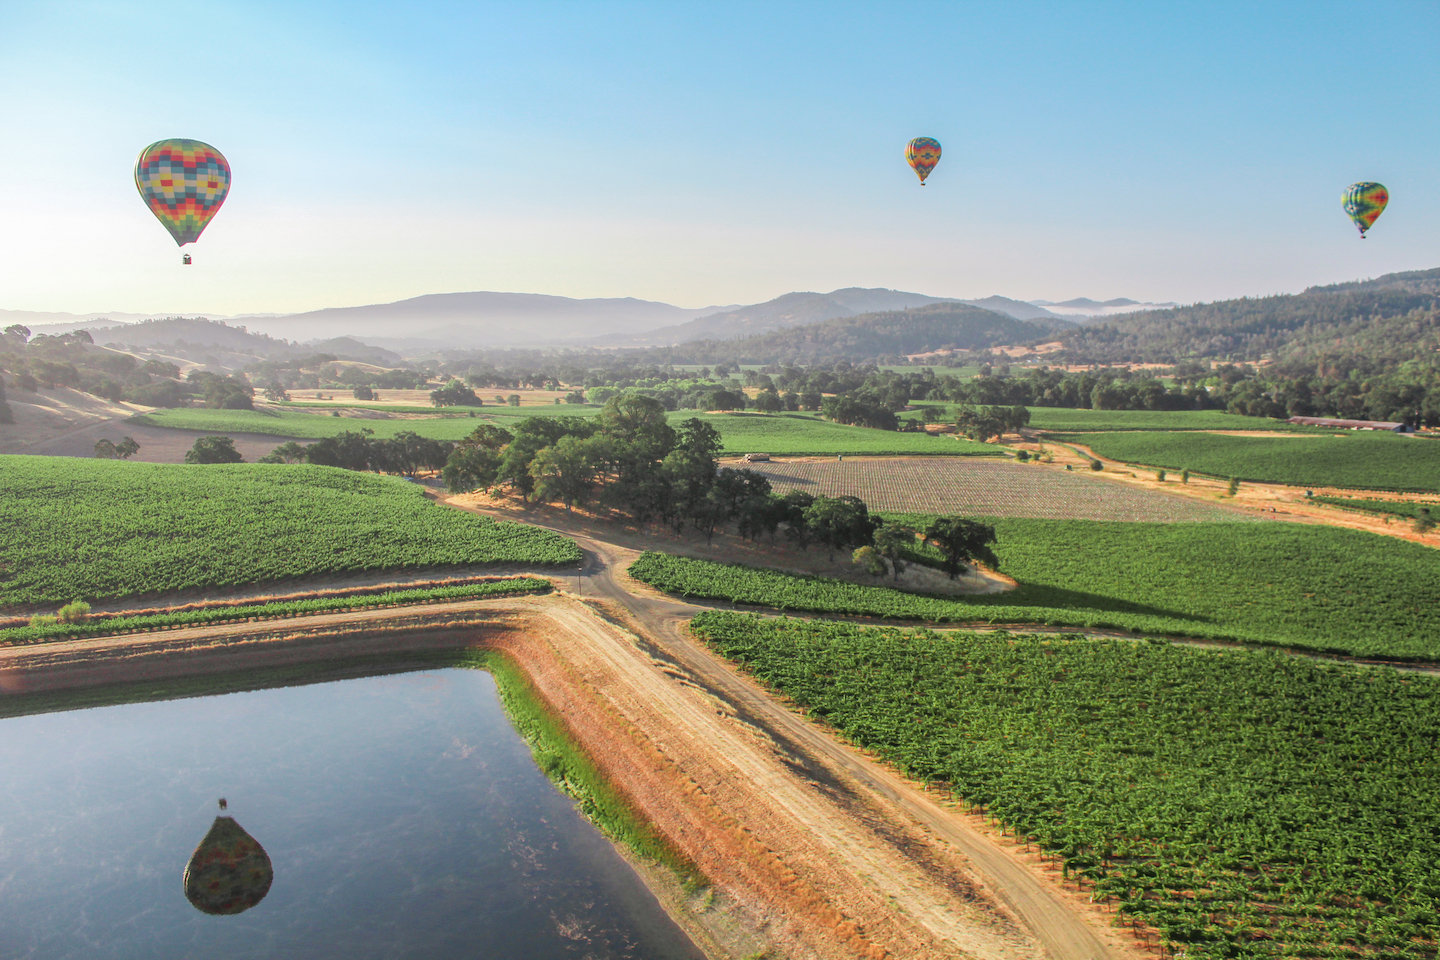 Hot air balloons over Napa Valley, California